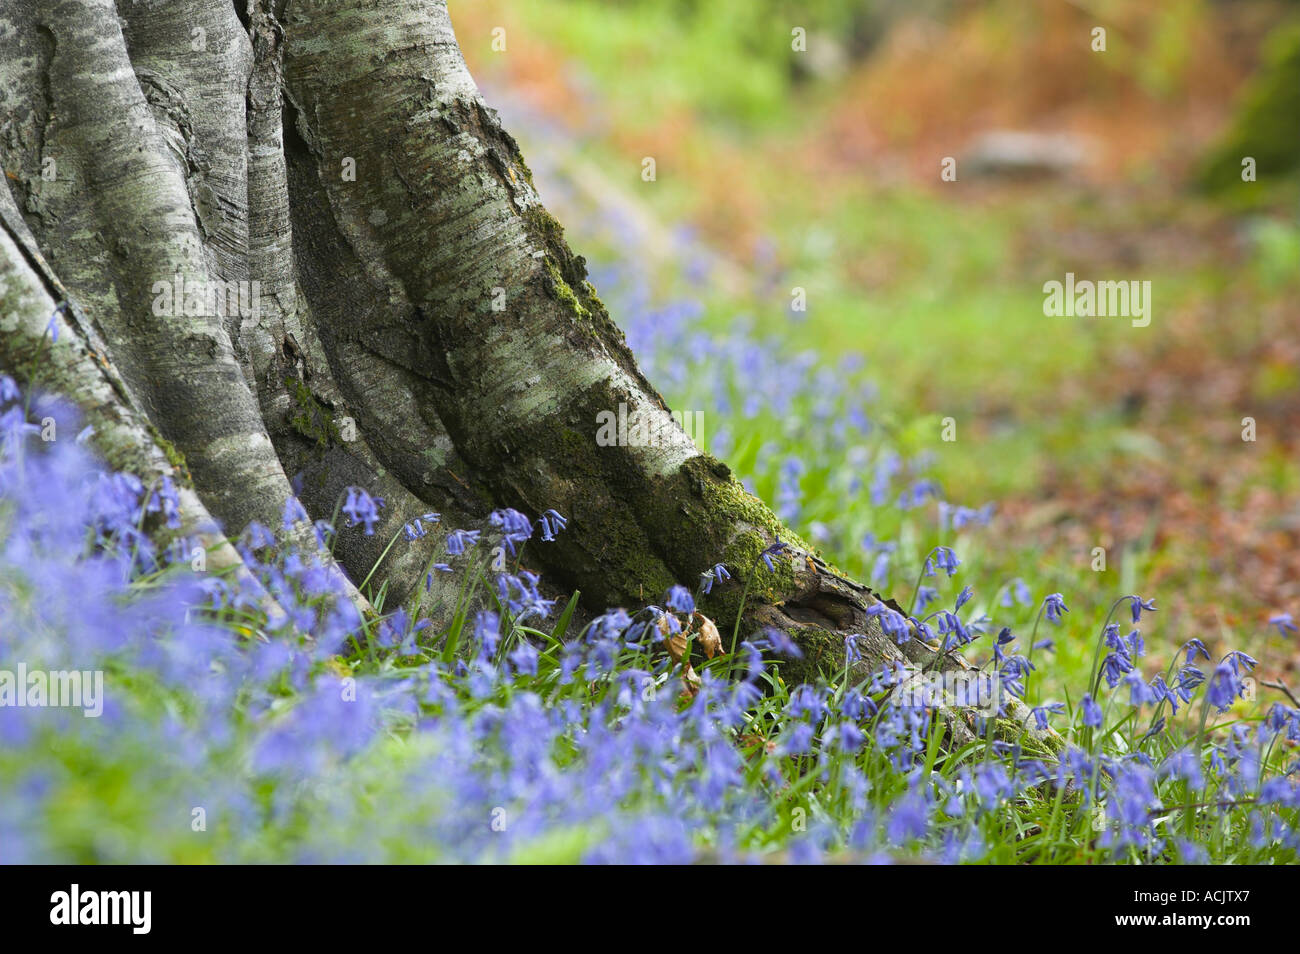 Bluebells, Hyacinthoides non scripta au tronc d'un arbre dans un bois Banque D'Images